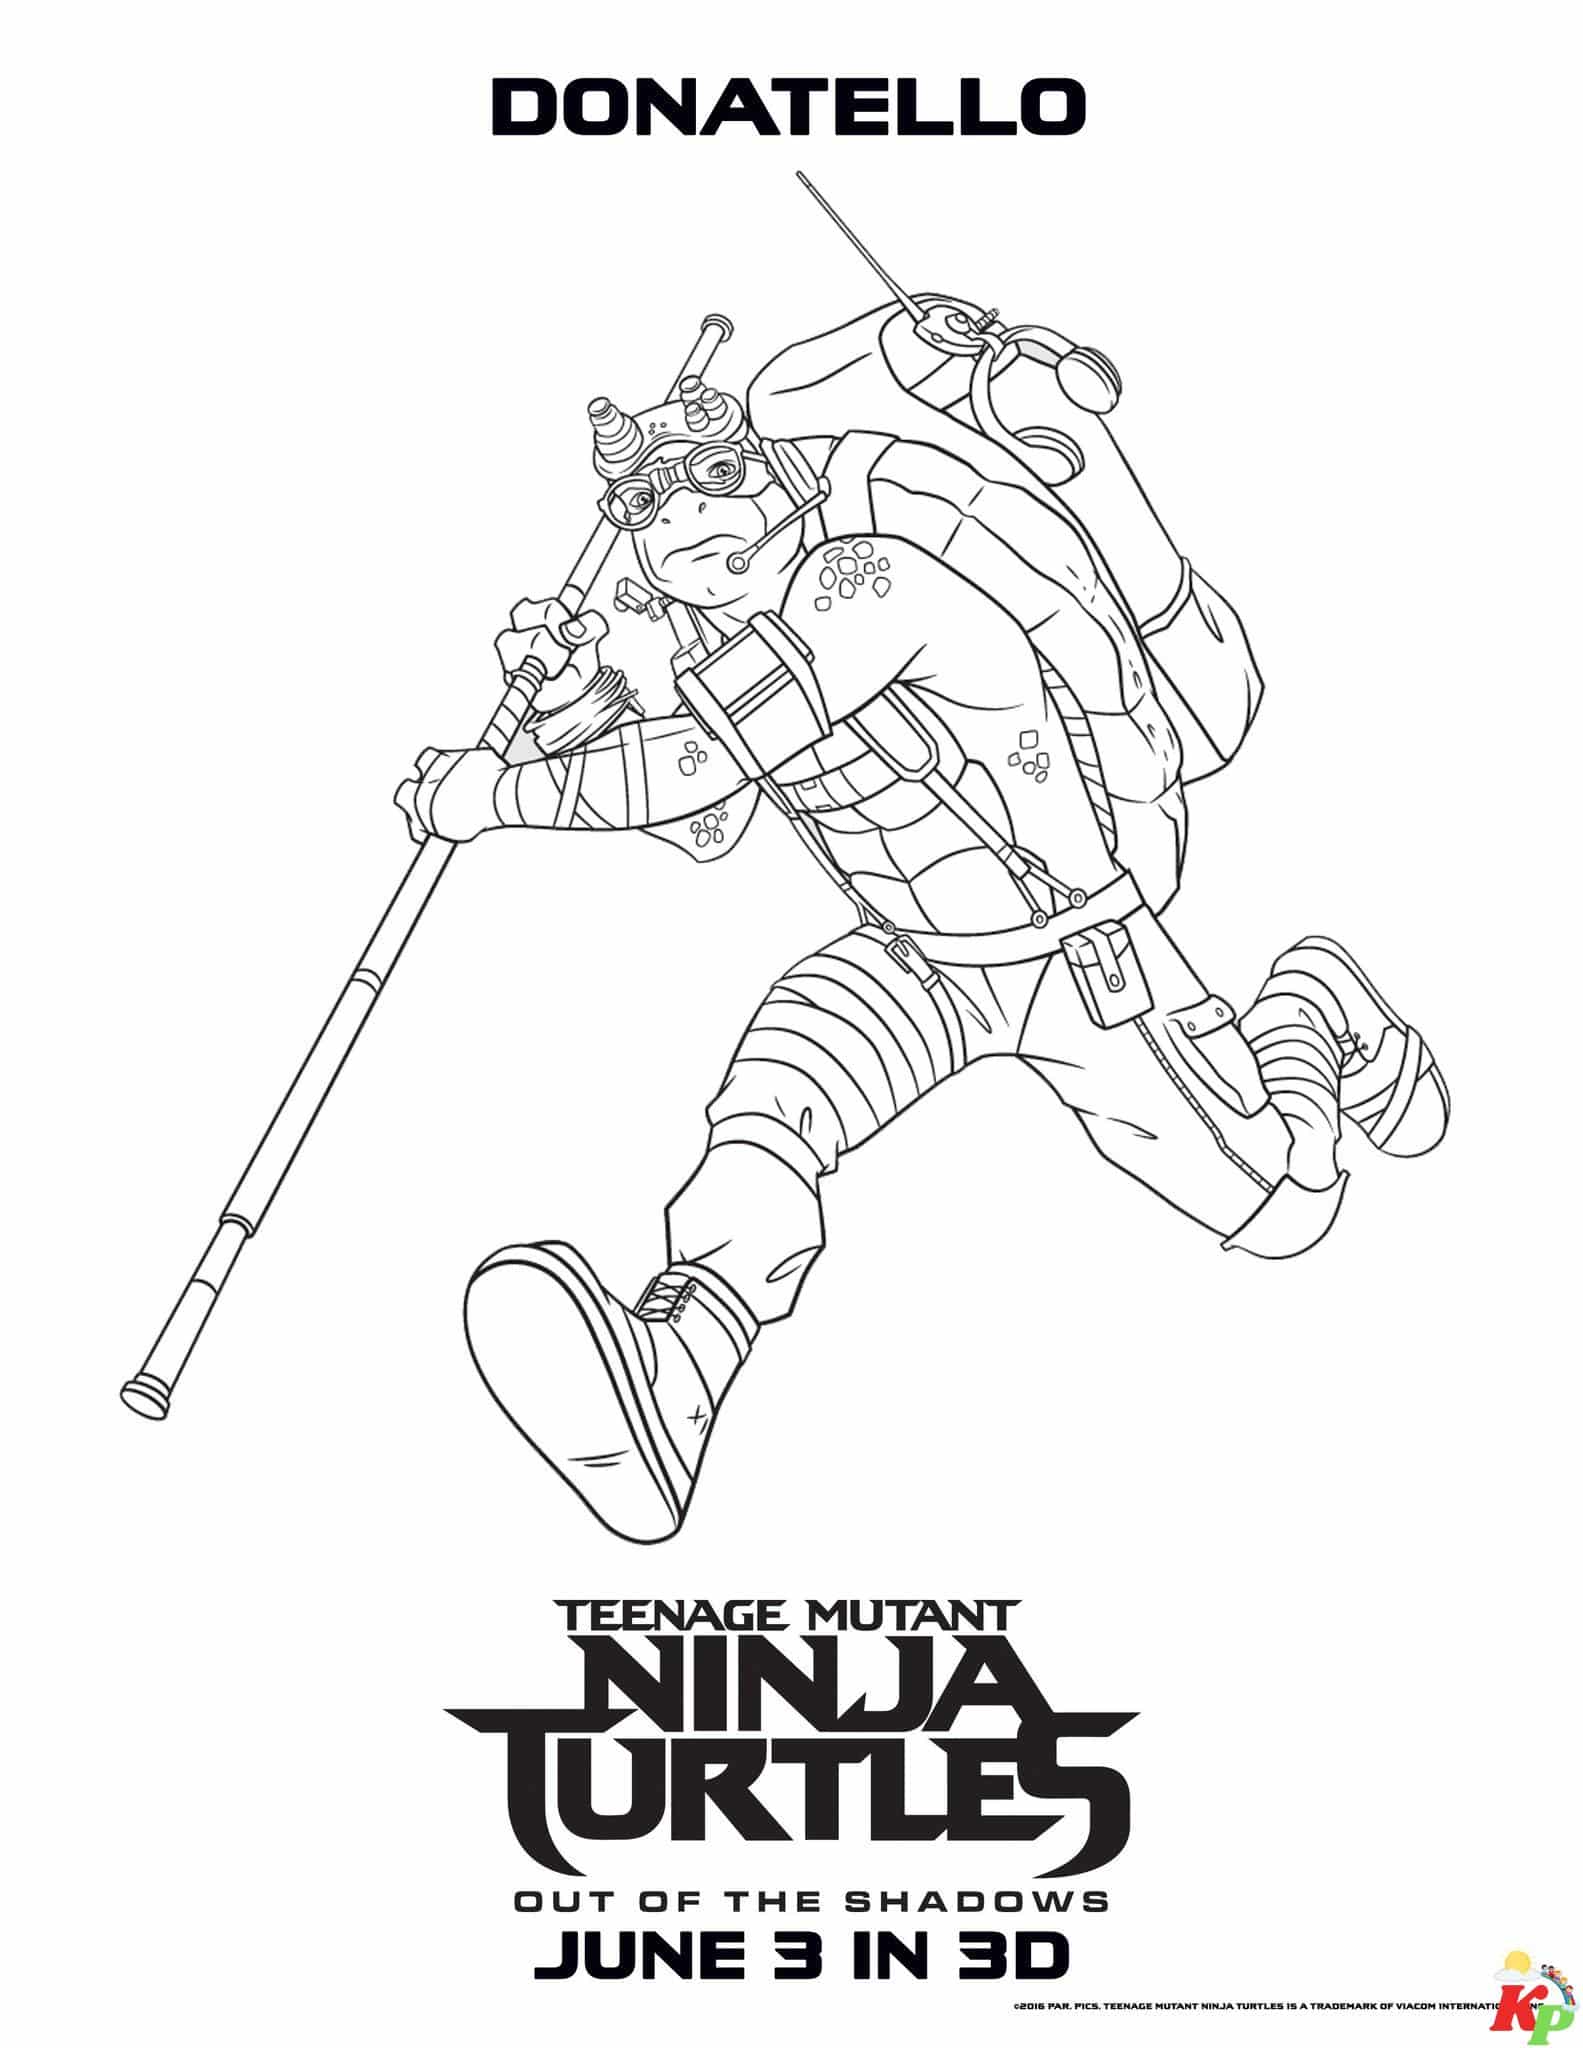 Ninja turtles 7